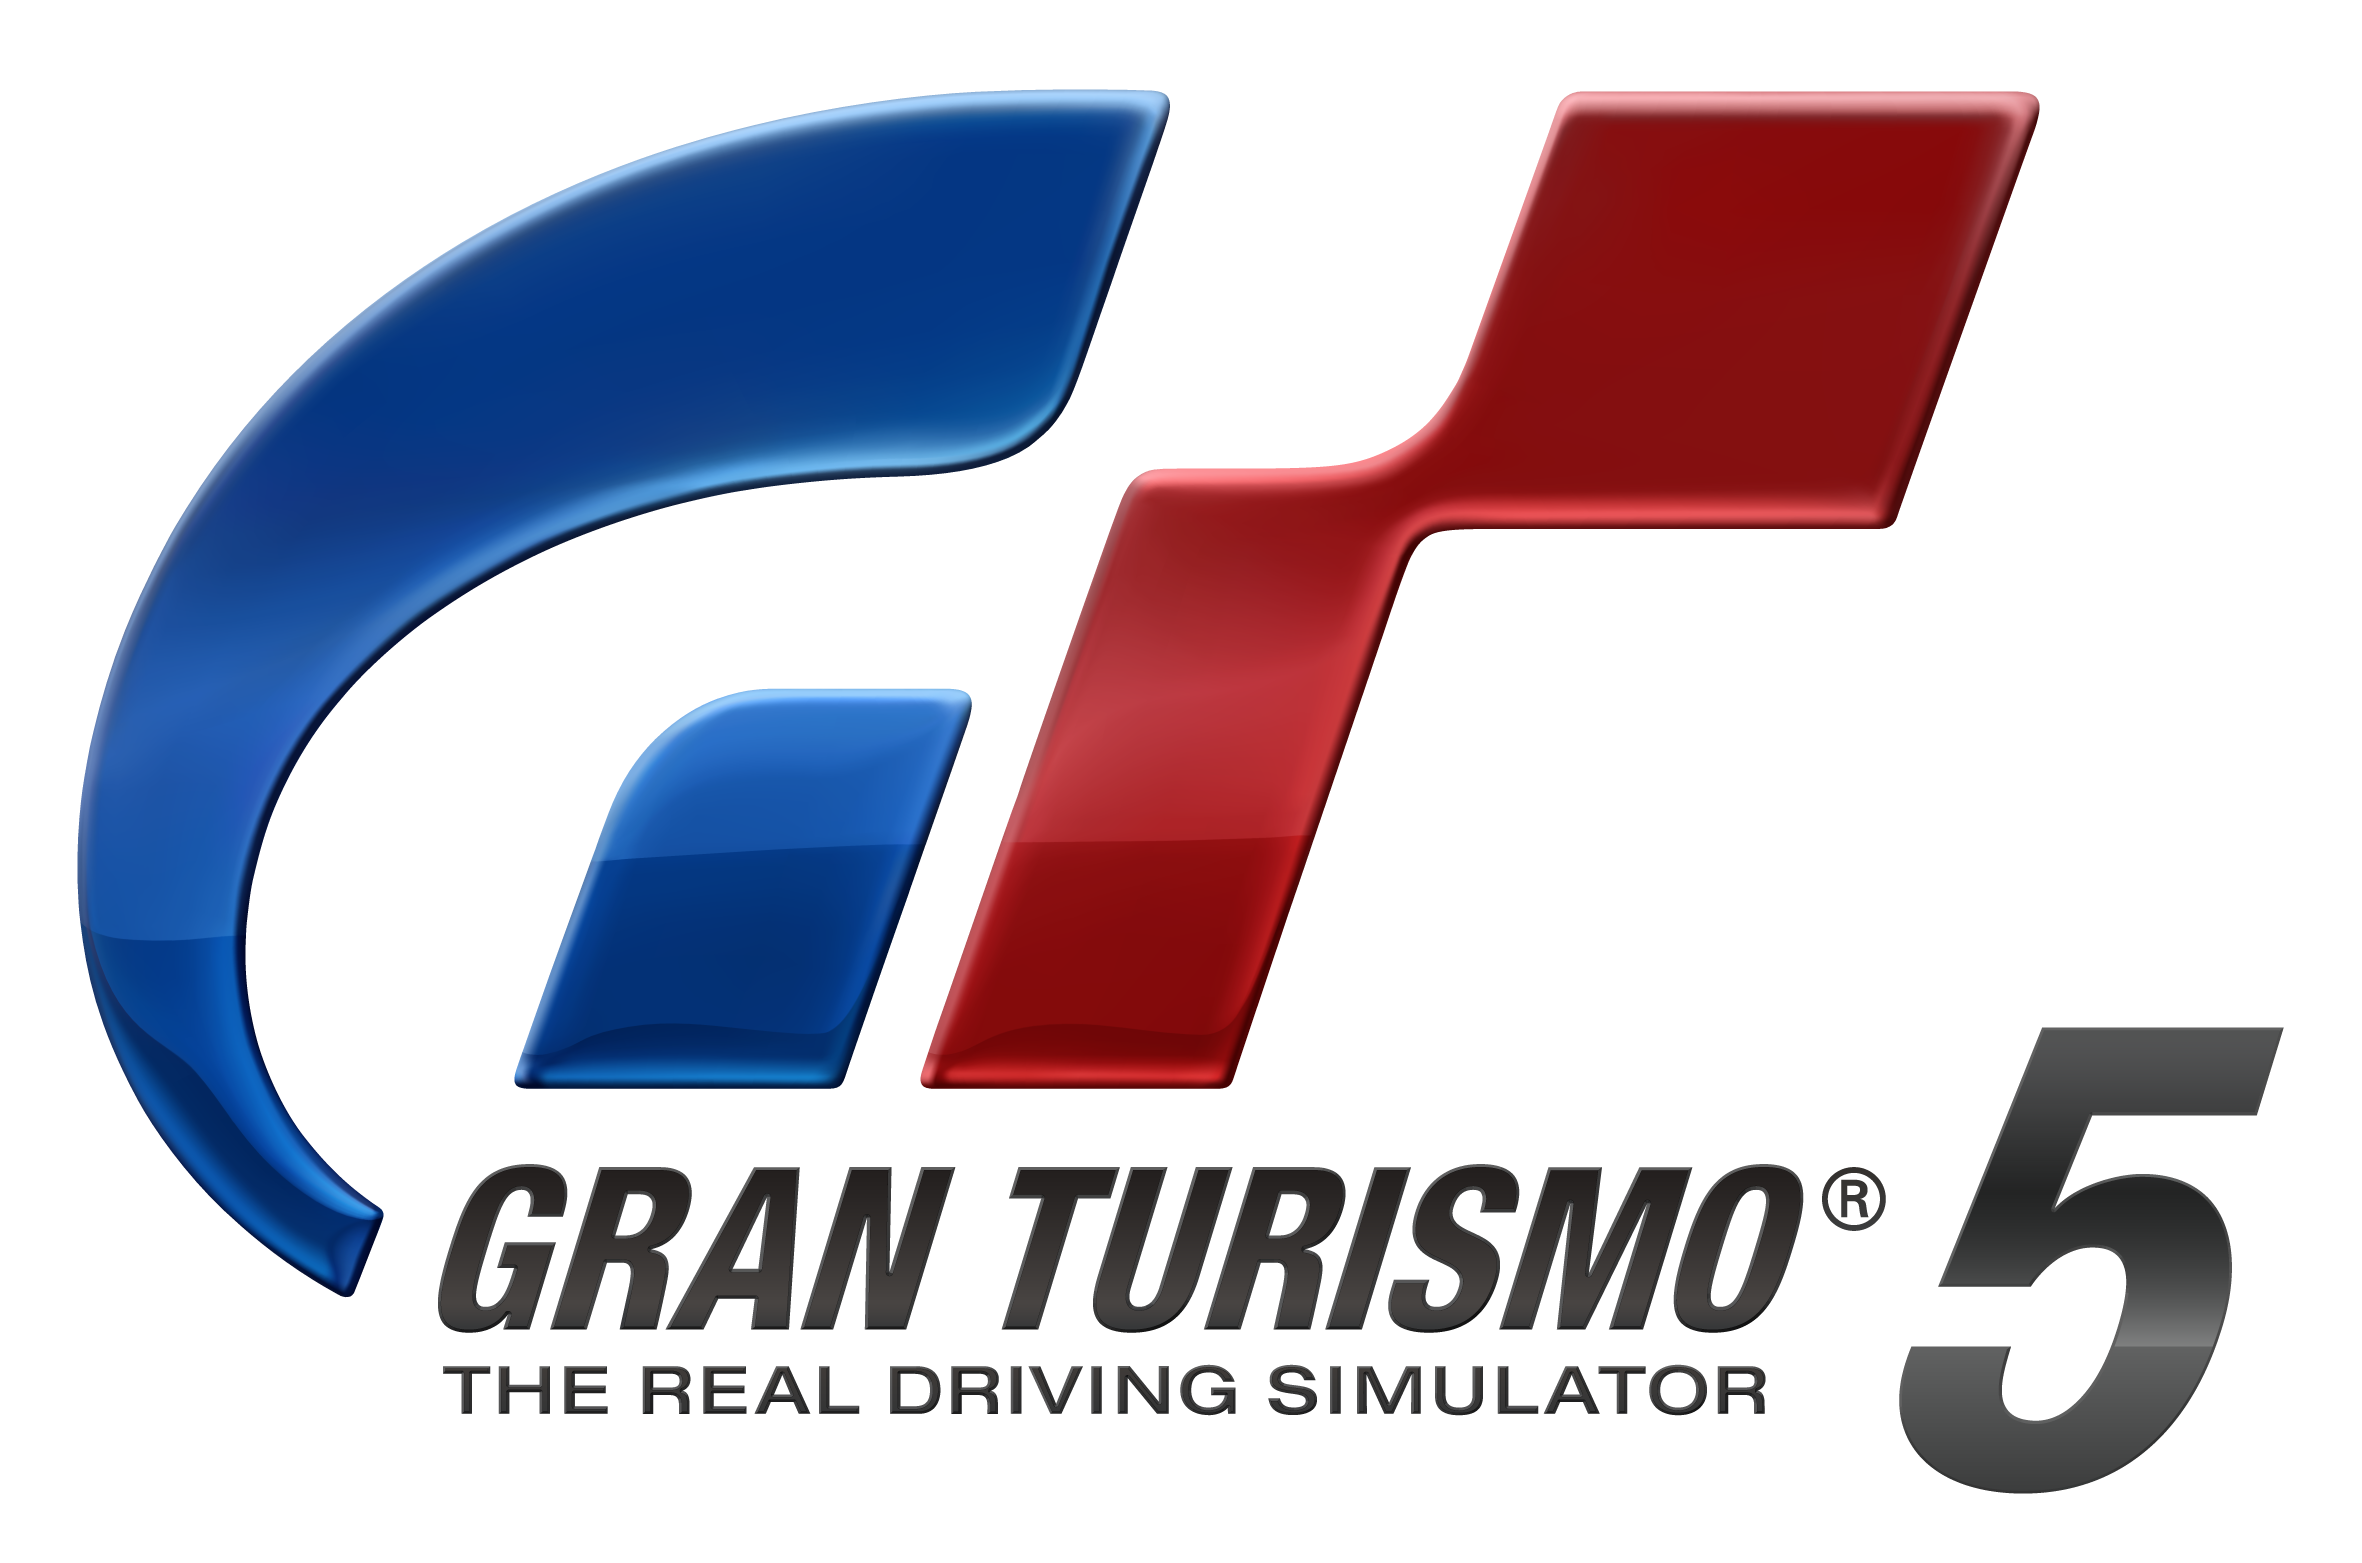 Gran turismo 5 - PS3